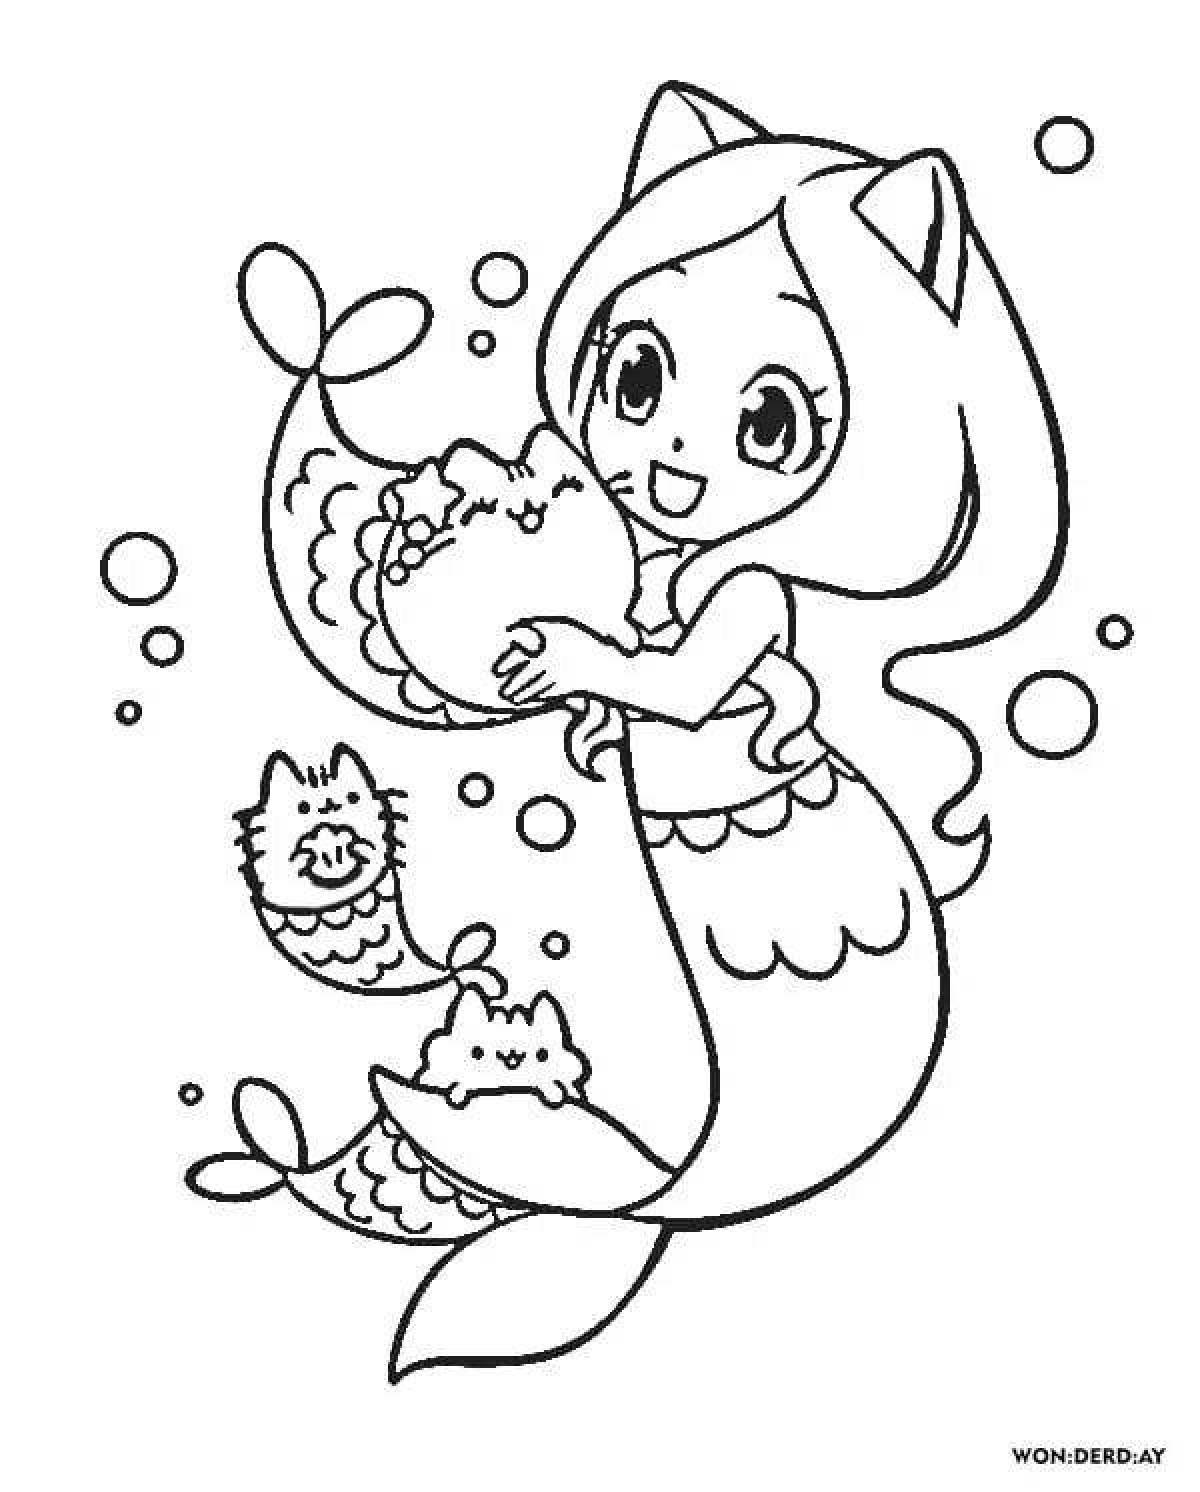 Surreal mermaid cat coloring book